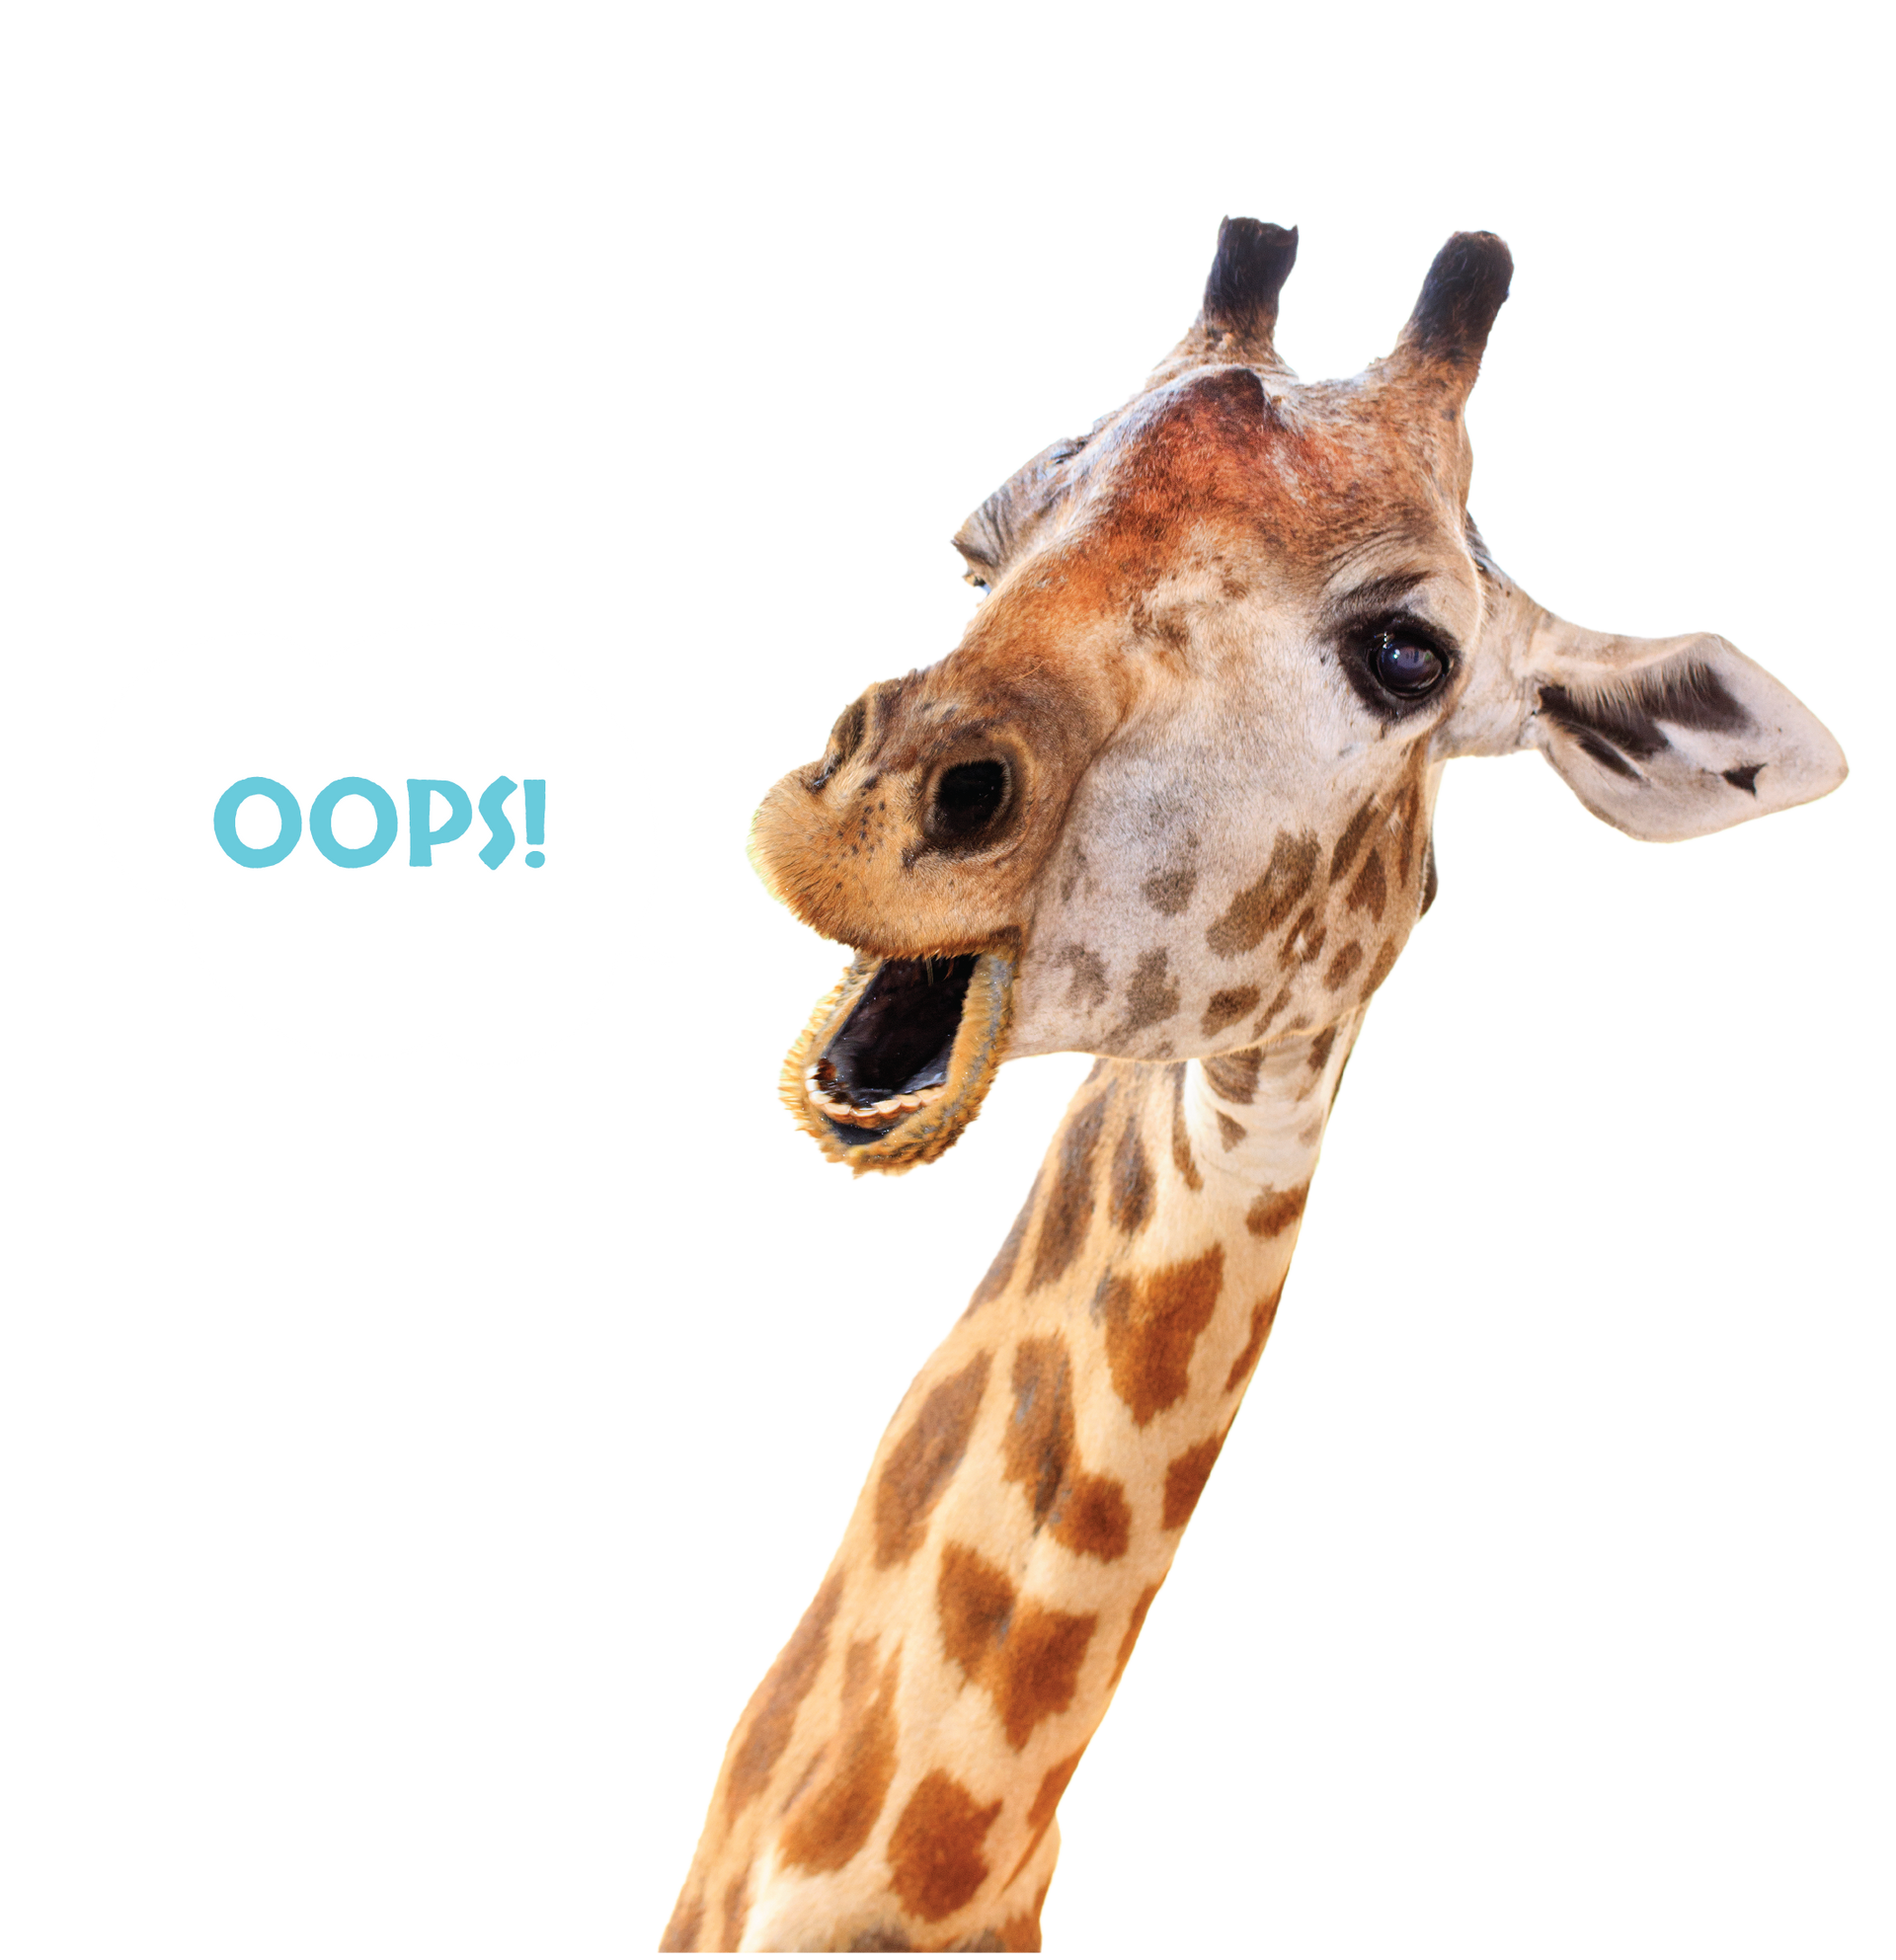 giraffe saying oops in safari niagara ontario